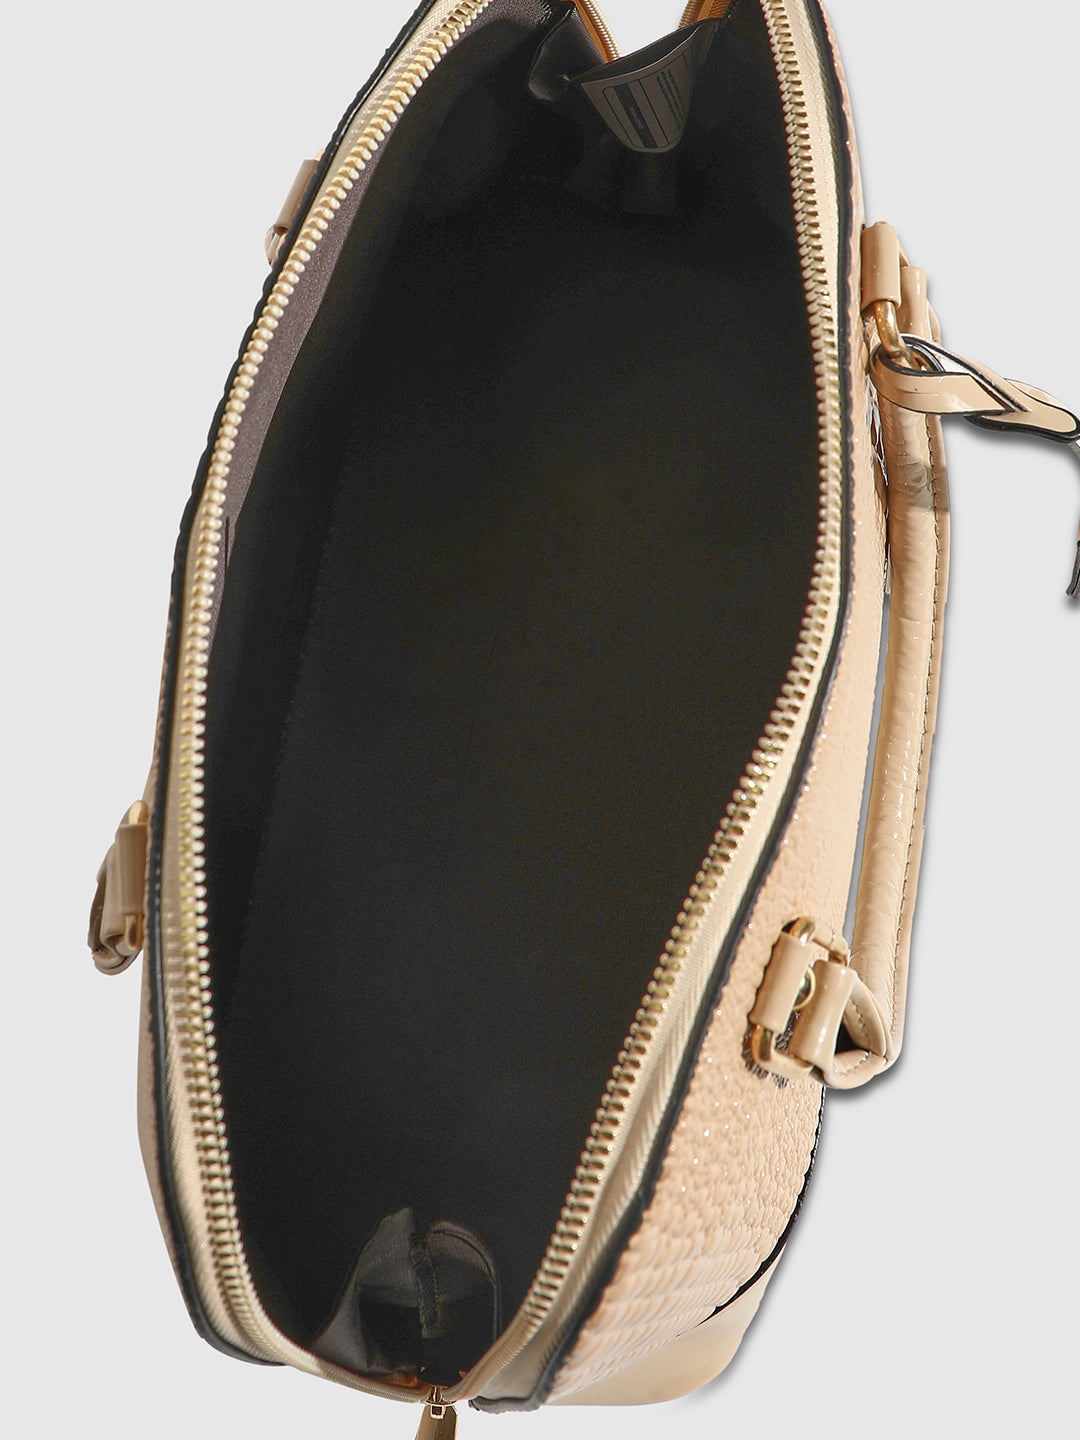 Croc Top Handle Handbag - Beige